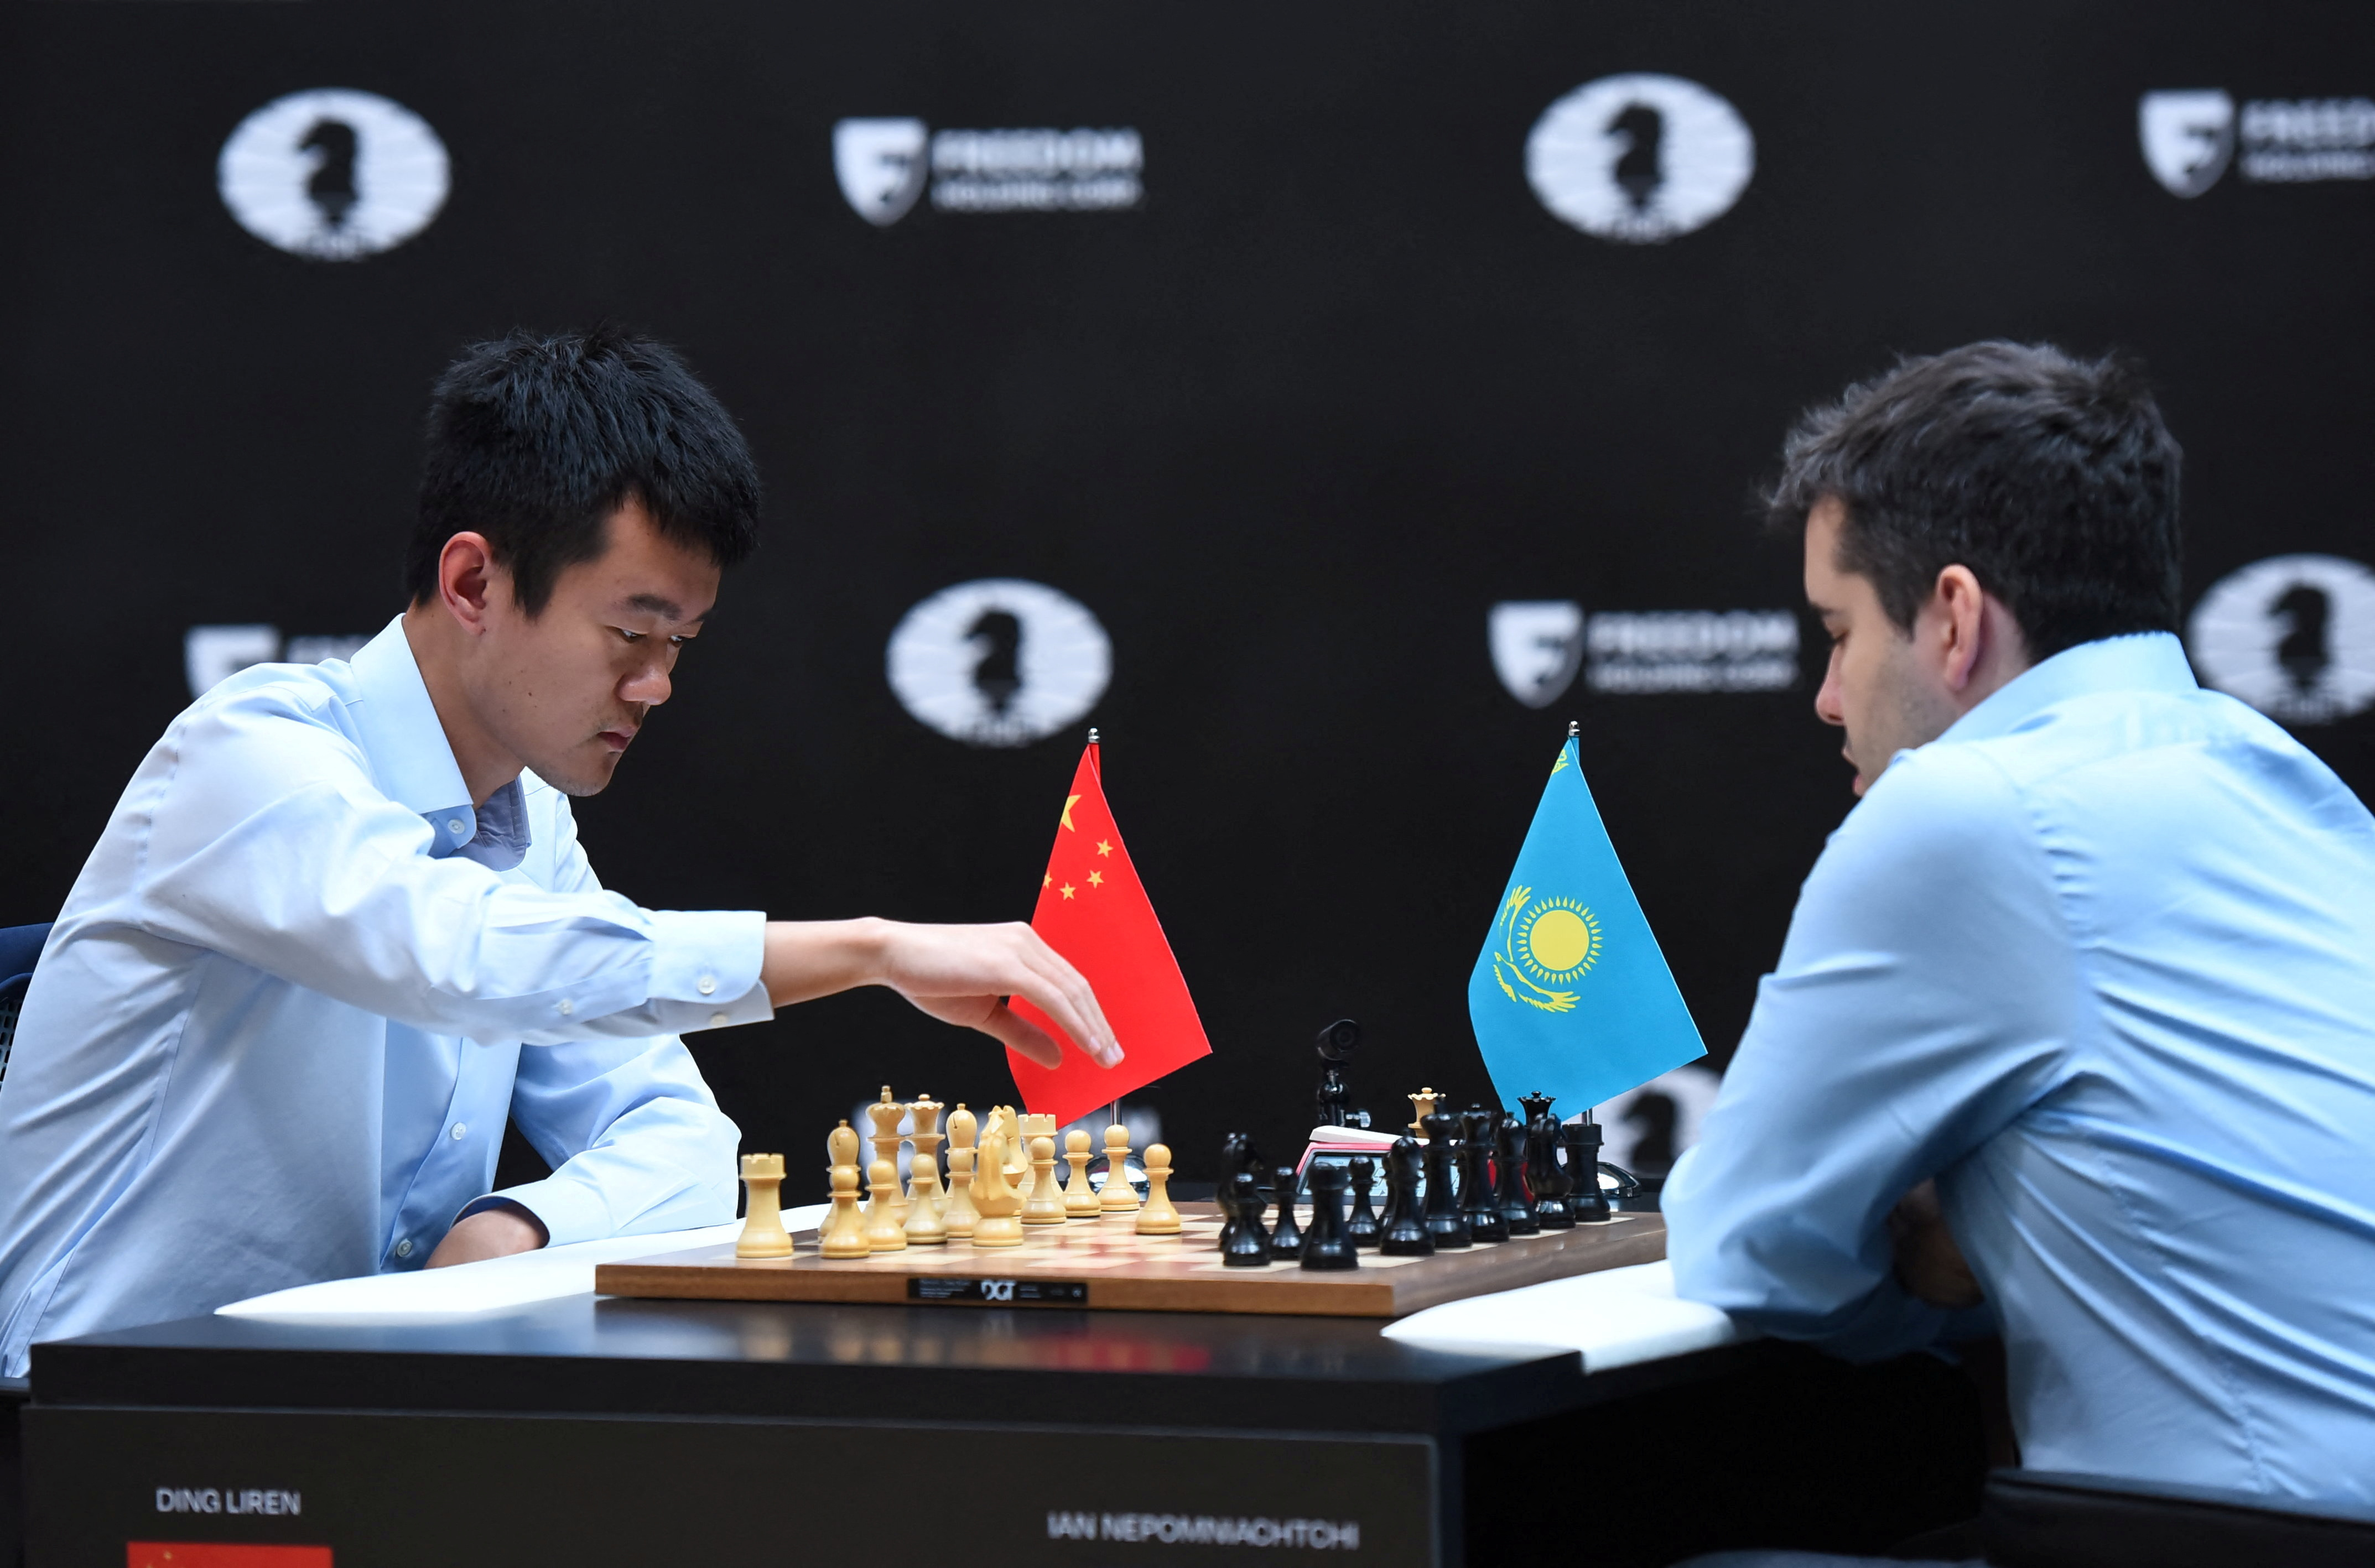 El chino Ding Liren venicó al ruso Ian Nepomniachtchi y se consagró campeón mundial de ajedrez (REUTERS/Vladislav Vodnev)